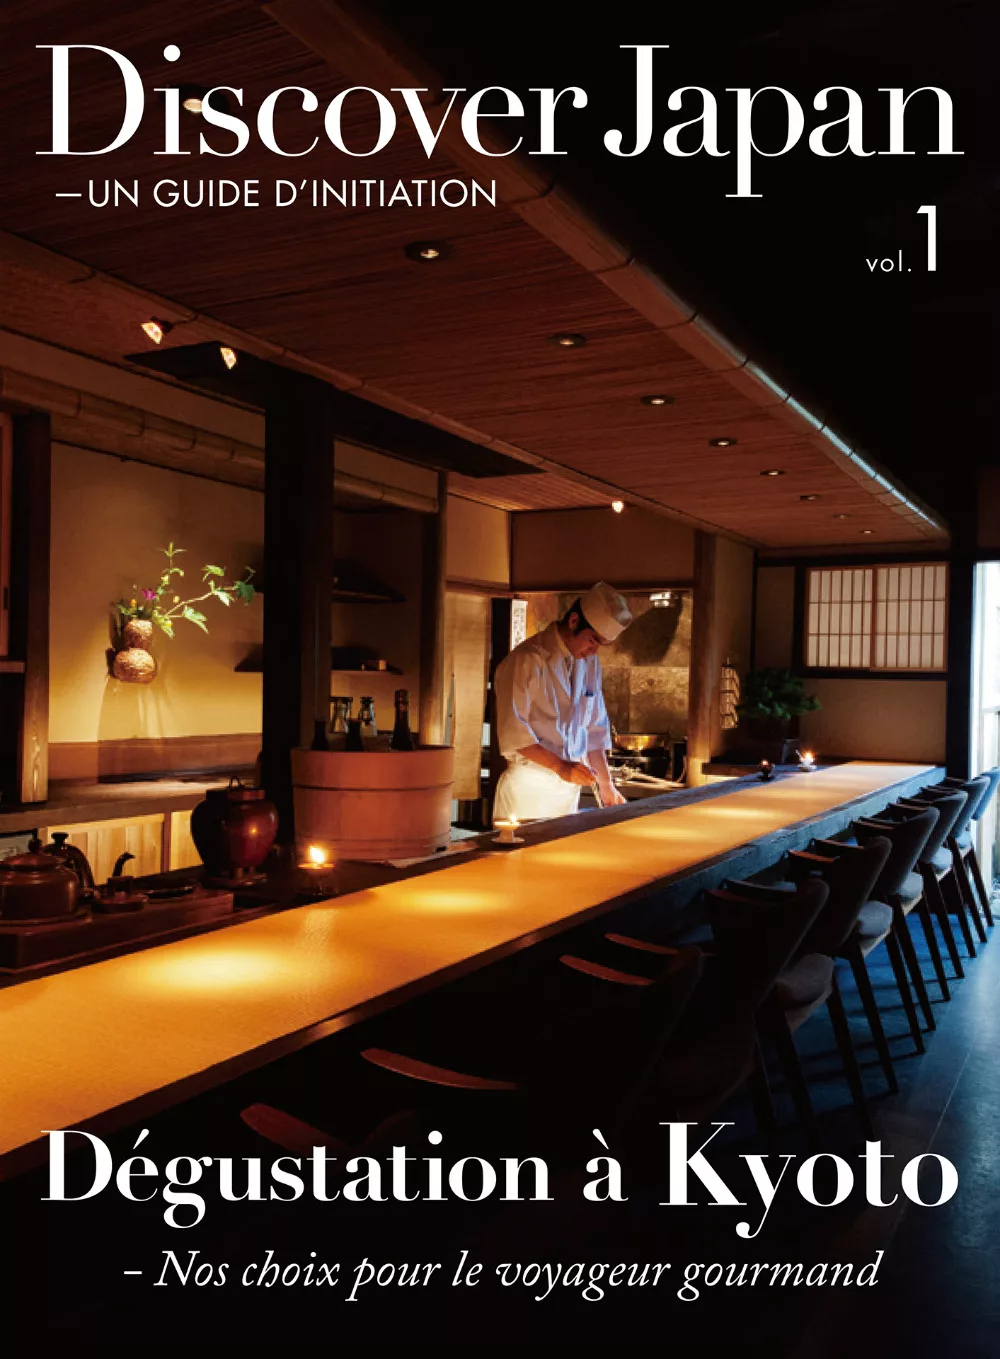 (歐美雜誌) Discover Japan - UN GUIDE D’INITIATION 2015第1期 (電子雜誌)